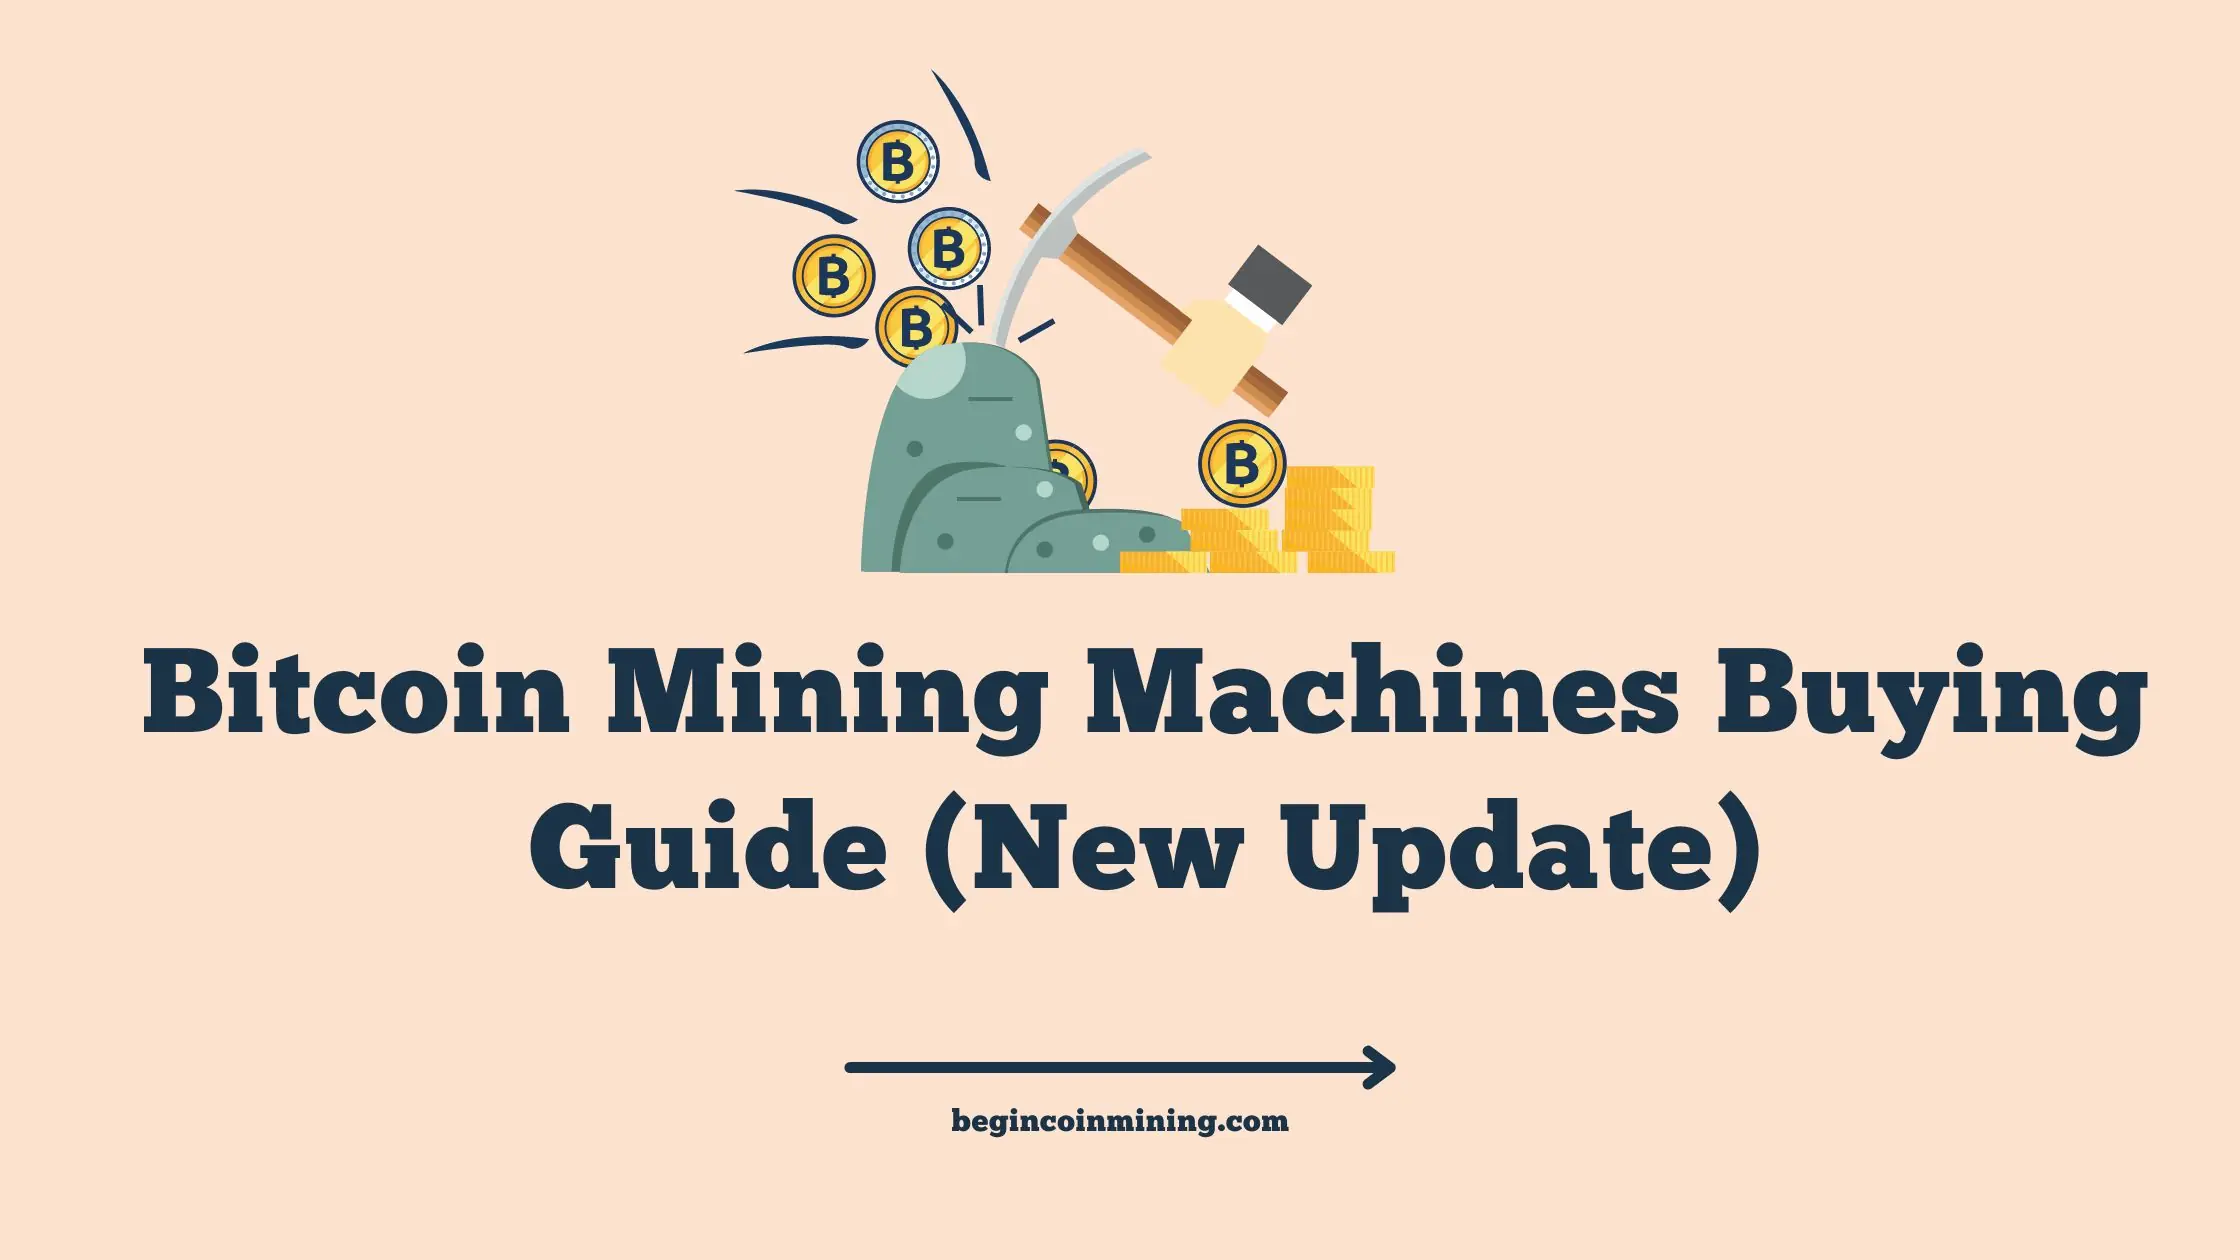 Bitcoin Mining Machines Buying Guide (New Update)